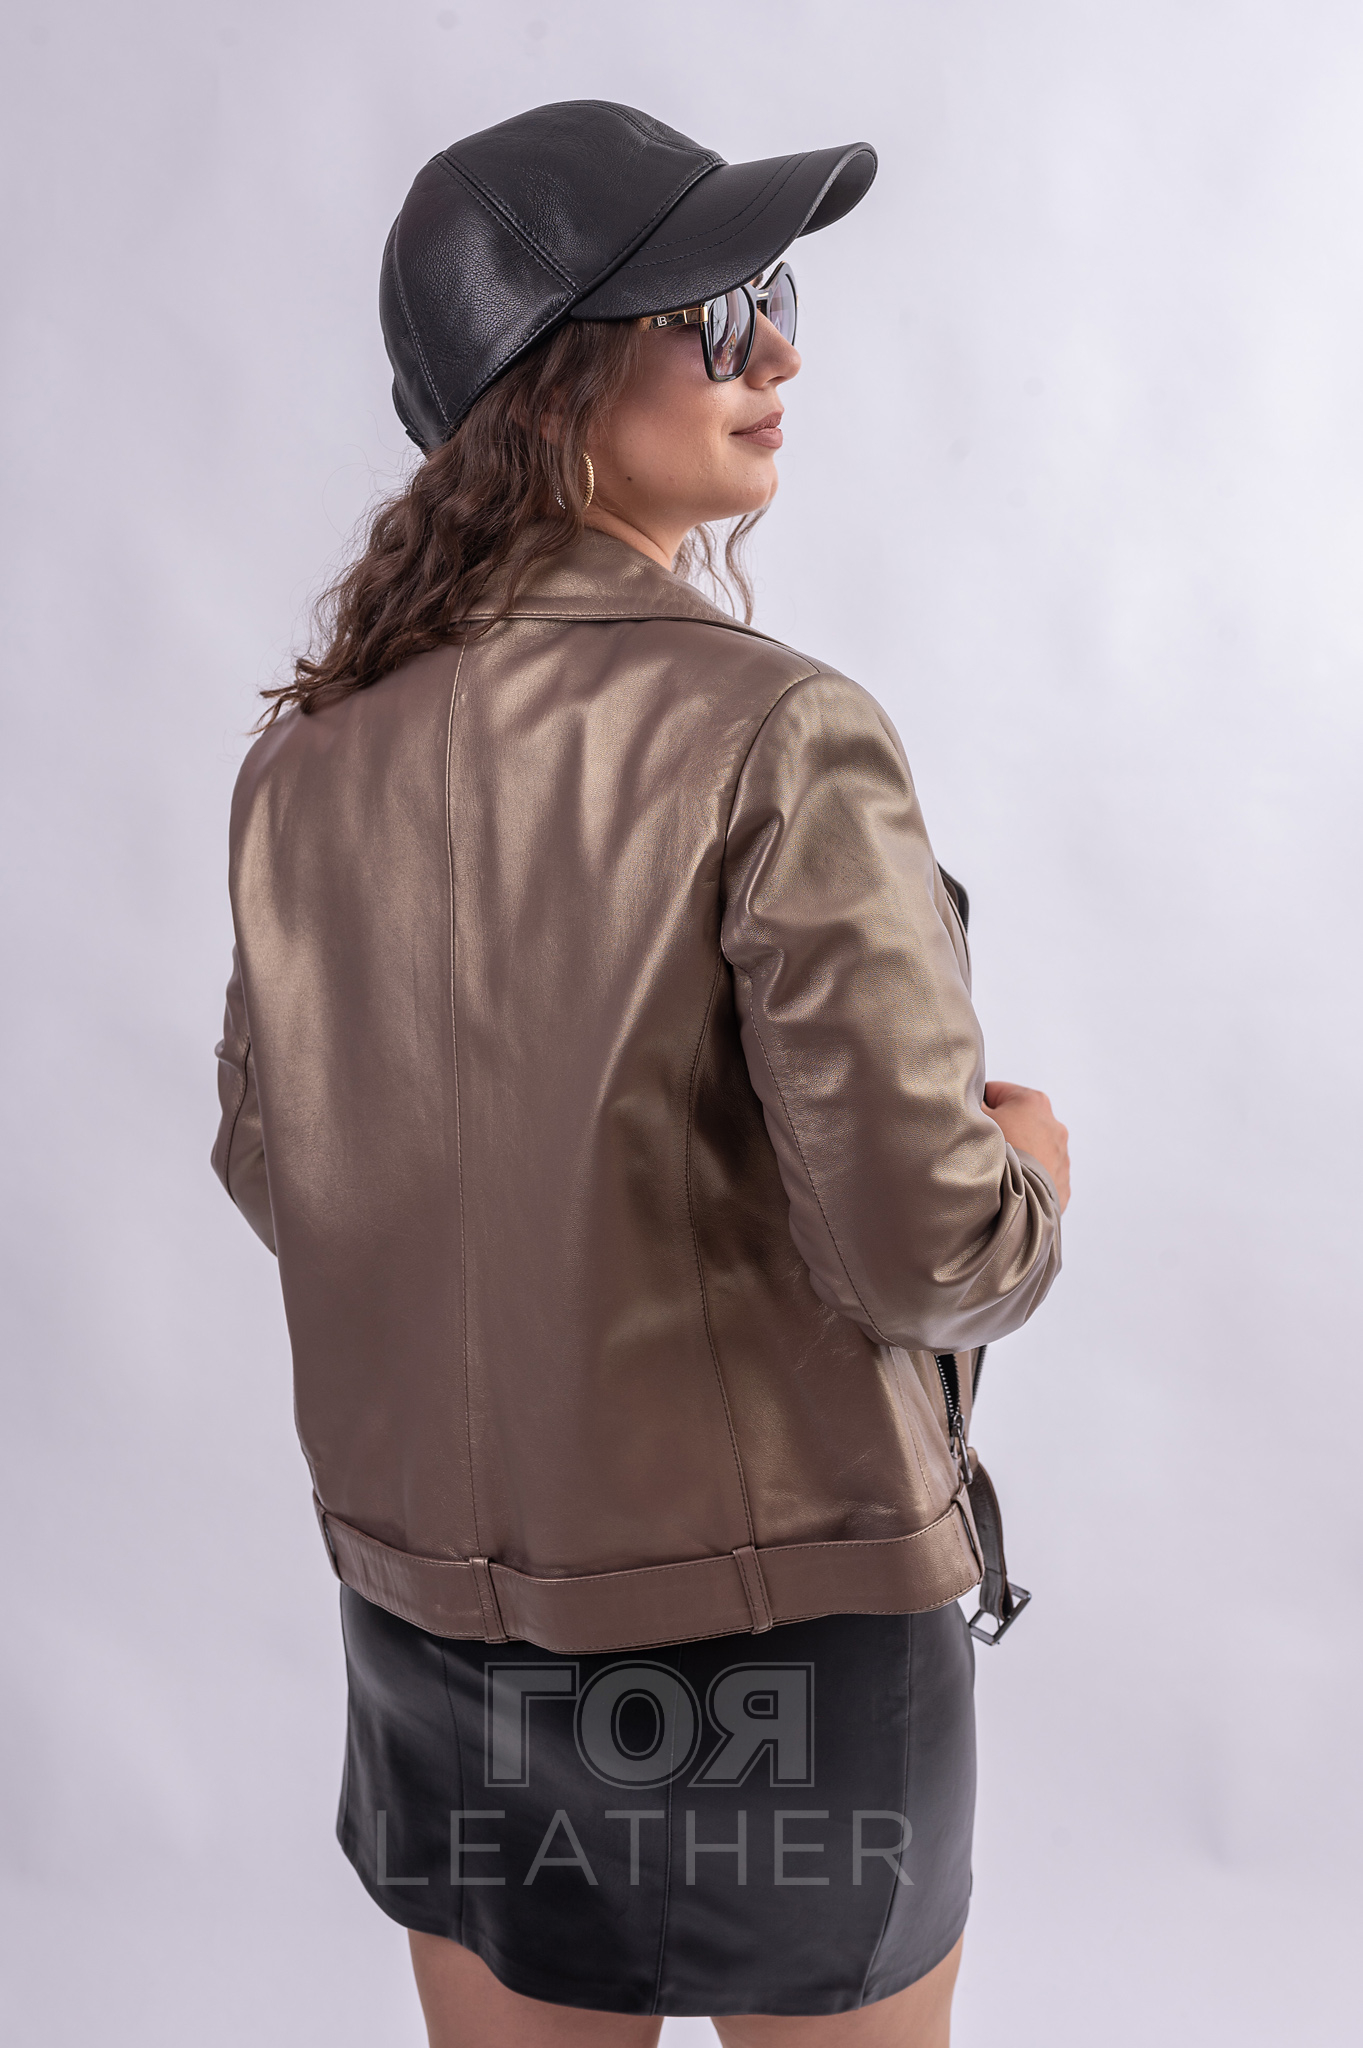 Модерно спортно кожено яке в цвят бронз от ГОЯ Leather. Нов модел байкер стил яке в уникален бронзов цвят с перлен ефект. Спортен модел с класическите за стила аксесоари като, ципове, капси и колан с катарама. Подходящо за сезон пролет и есен.